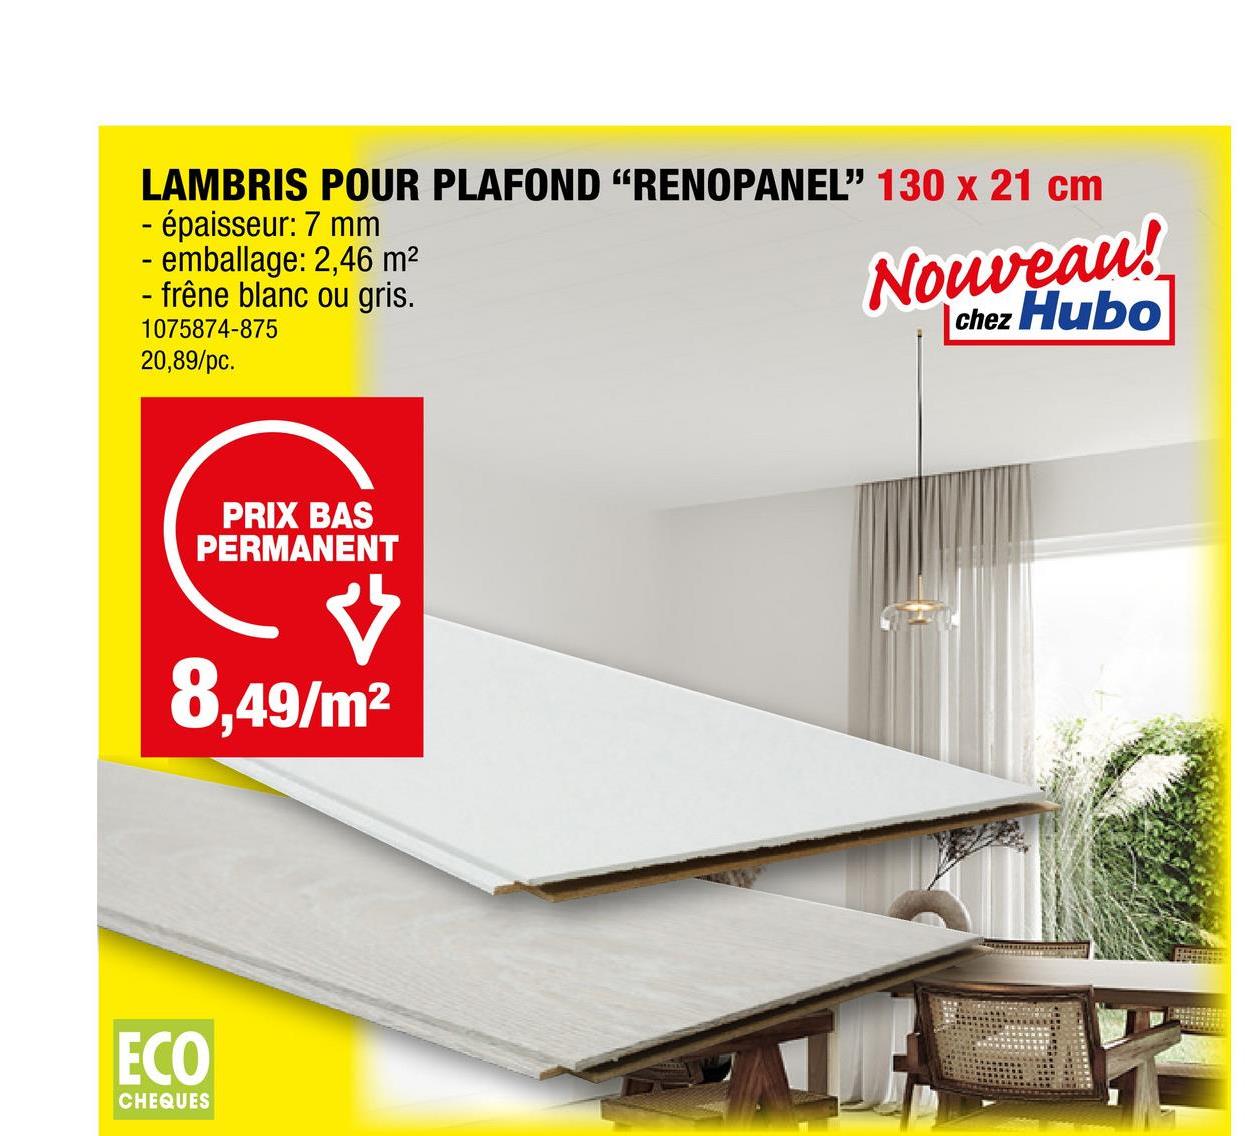 LAMBRIS POUR PLAFOND "RENOPANEL" 130 x 21 cm
- épaisseur: 7 mm
- emballage: 2,46 m²
- frêne blanc ou gris.
1075874-875
20,89/pc.
PRIX BAS
PERMANENT
Ý
8,49/m²
ECO
CHEQUES
Nouveau!
Chez Hubo